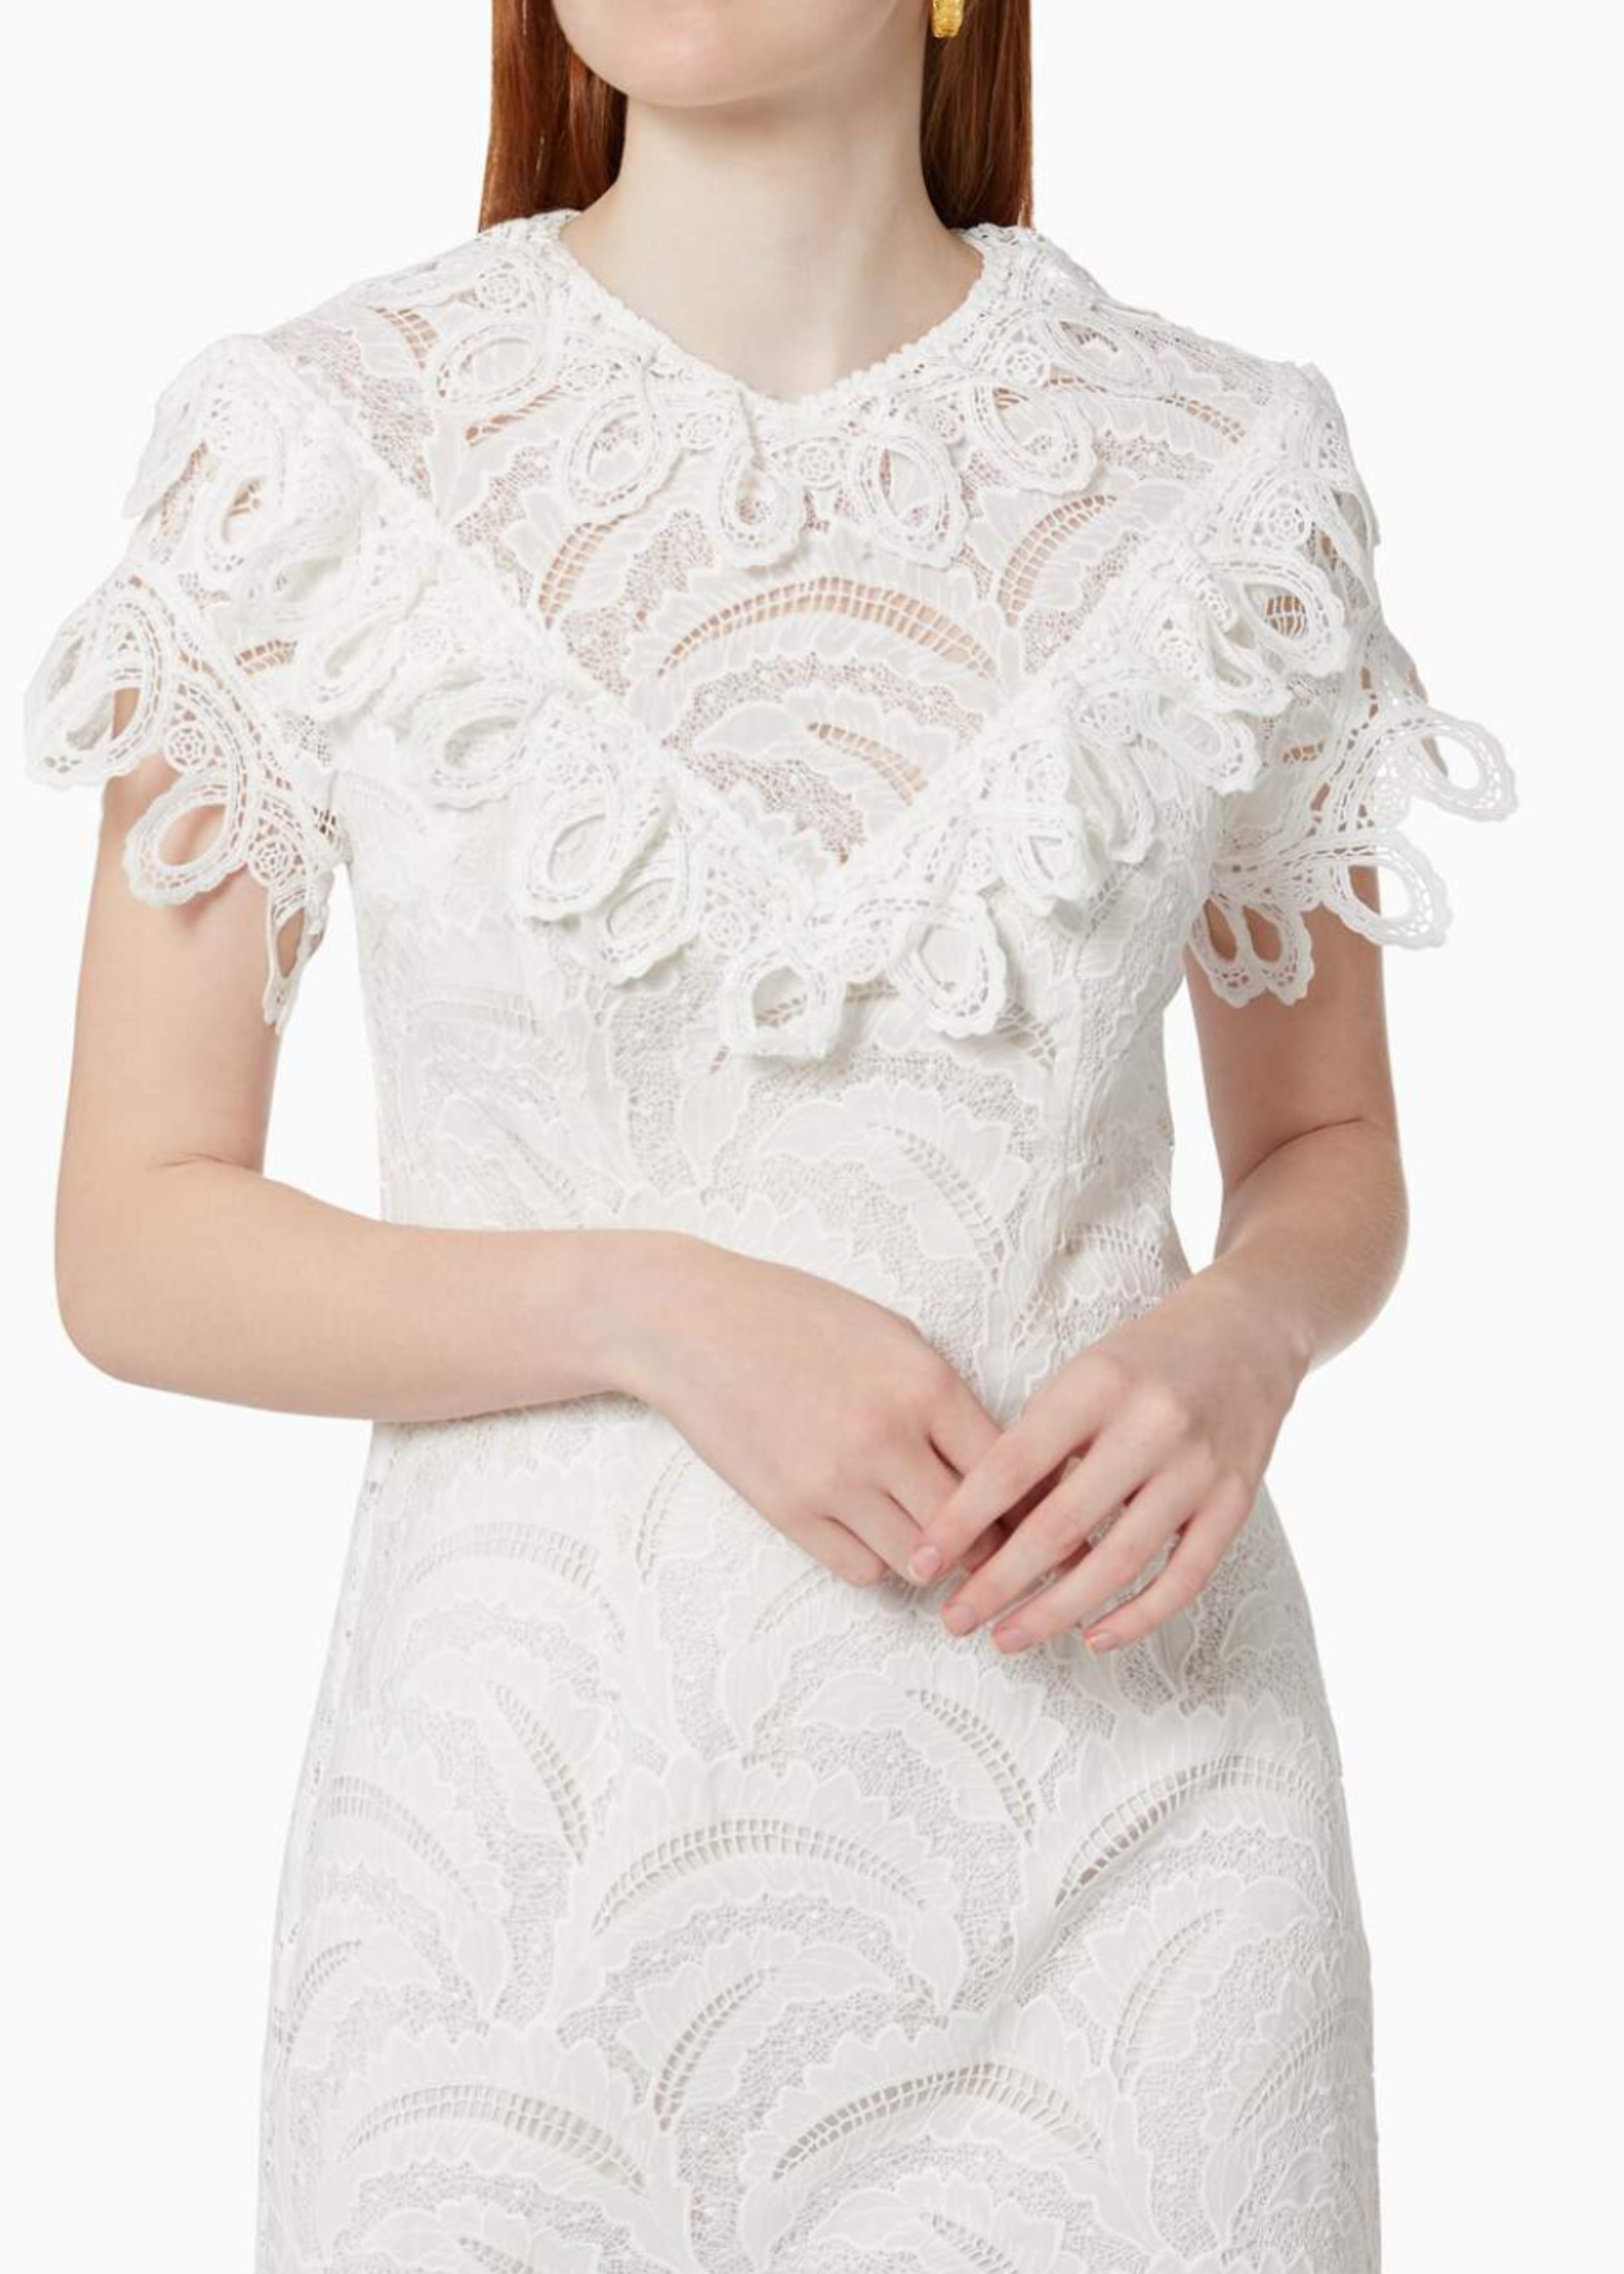 Elitaire Boutique Hovea Dress in White